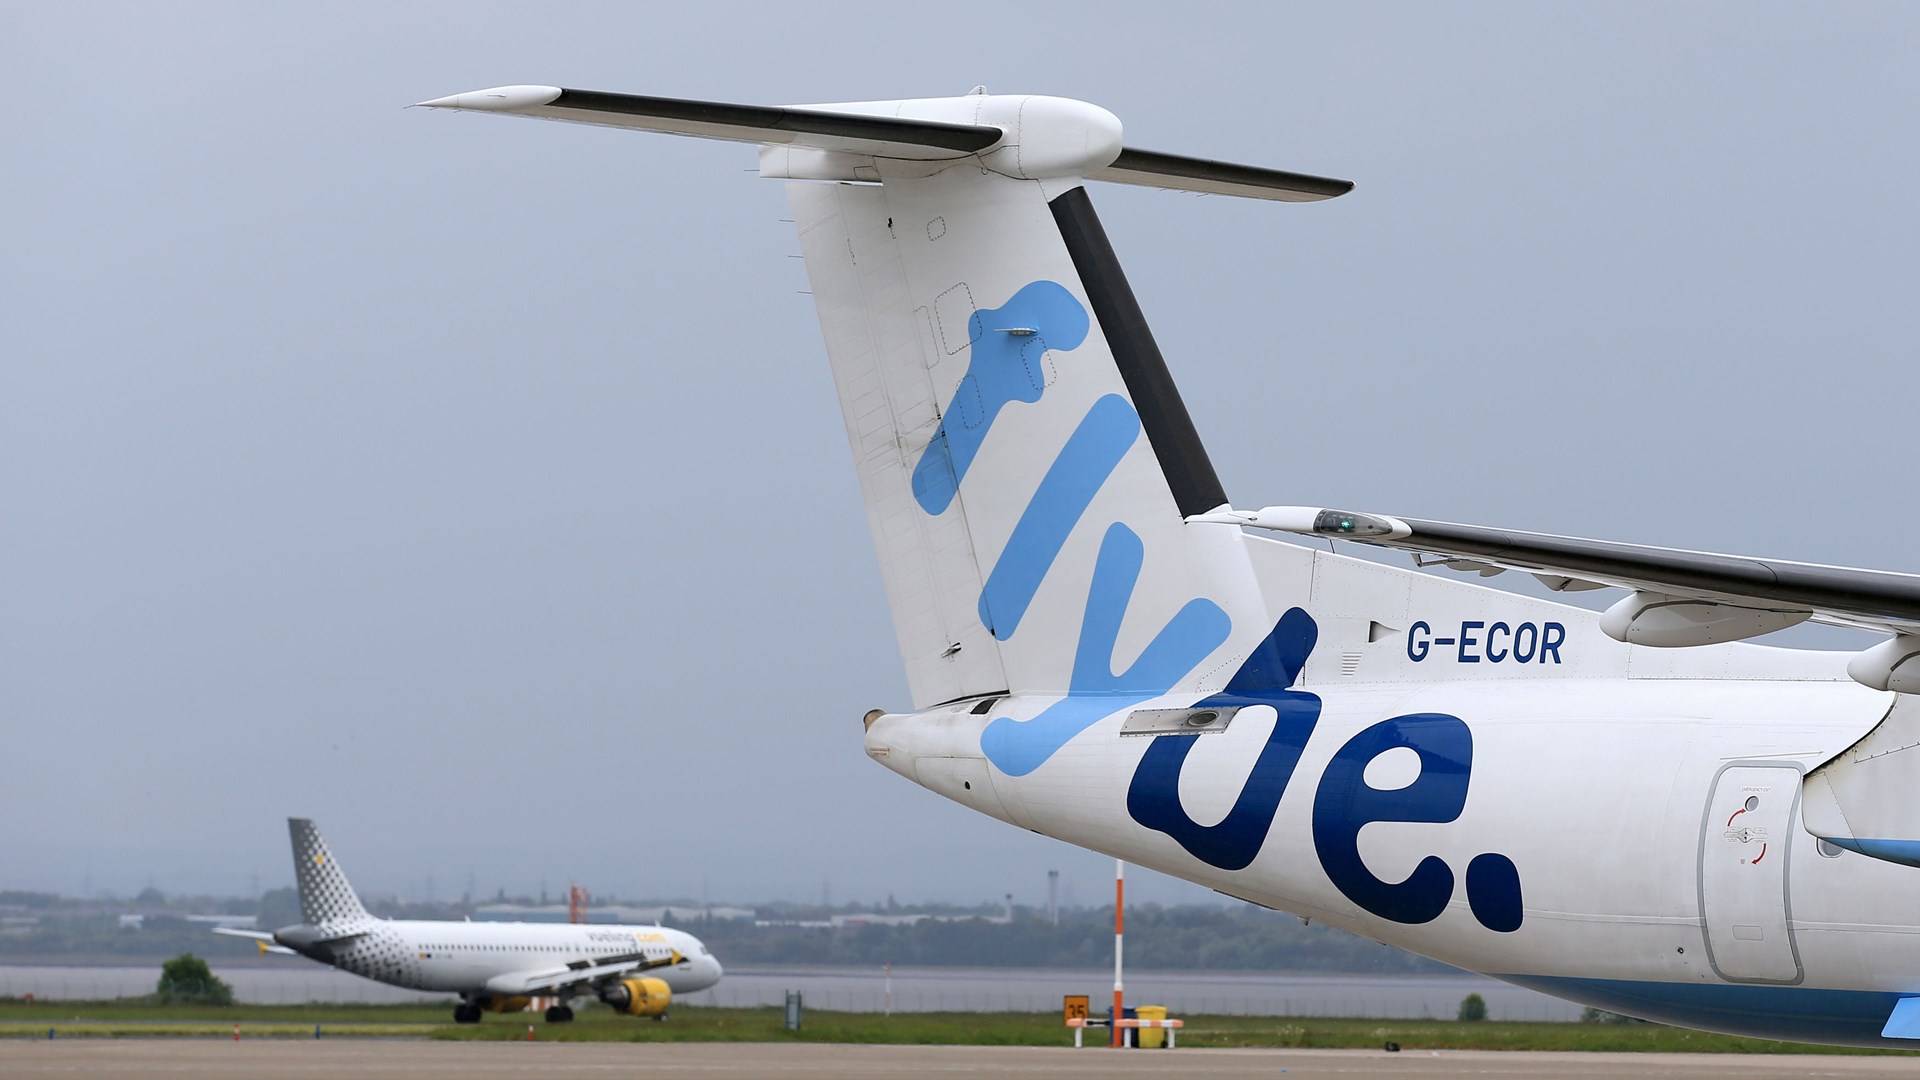 Συναγερμός στο Μπέλφαστ – Πιλότος ζητά αναγκαστική προσγείωση αεροσκάφους λόγω σοβαρού προβλήματος